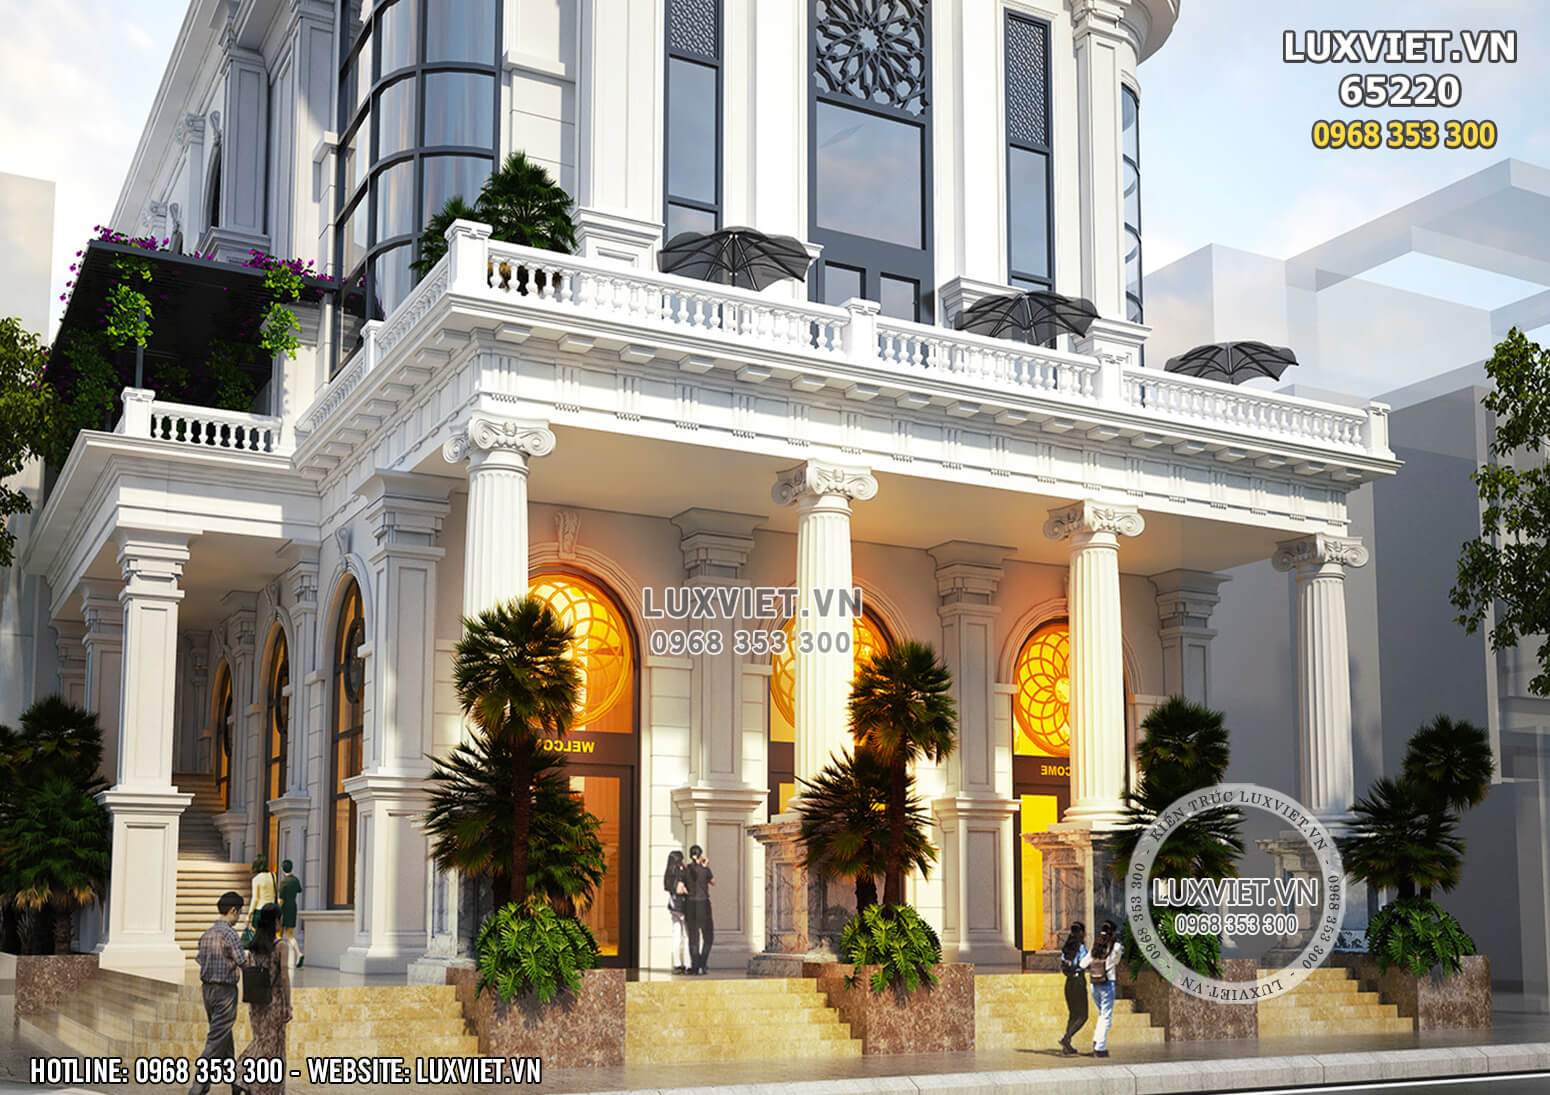 Hình ảnh: Khu vực sảnh chính tiếp khách của mẫu khách sạn đẹp tân cổ điển